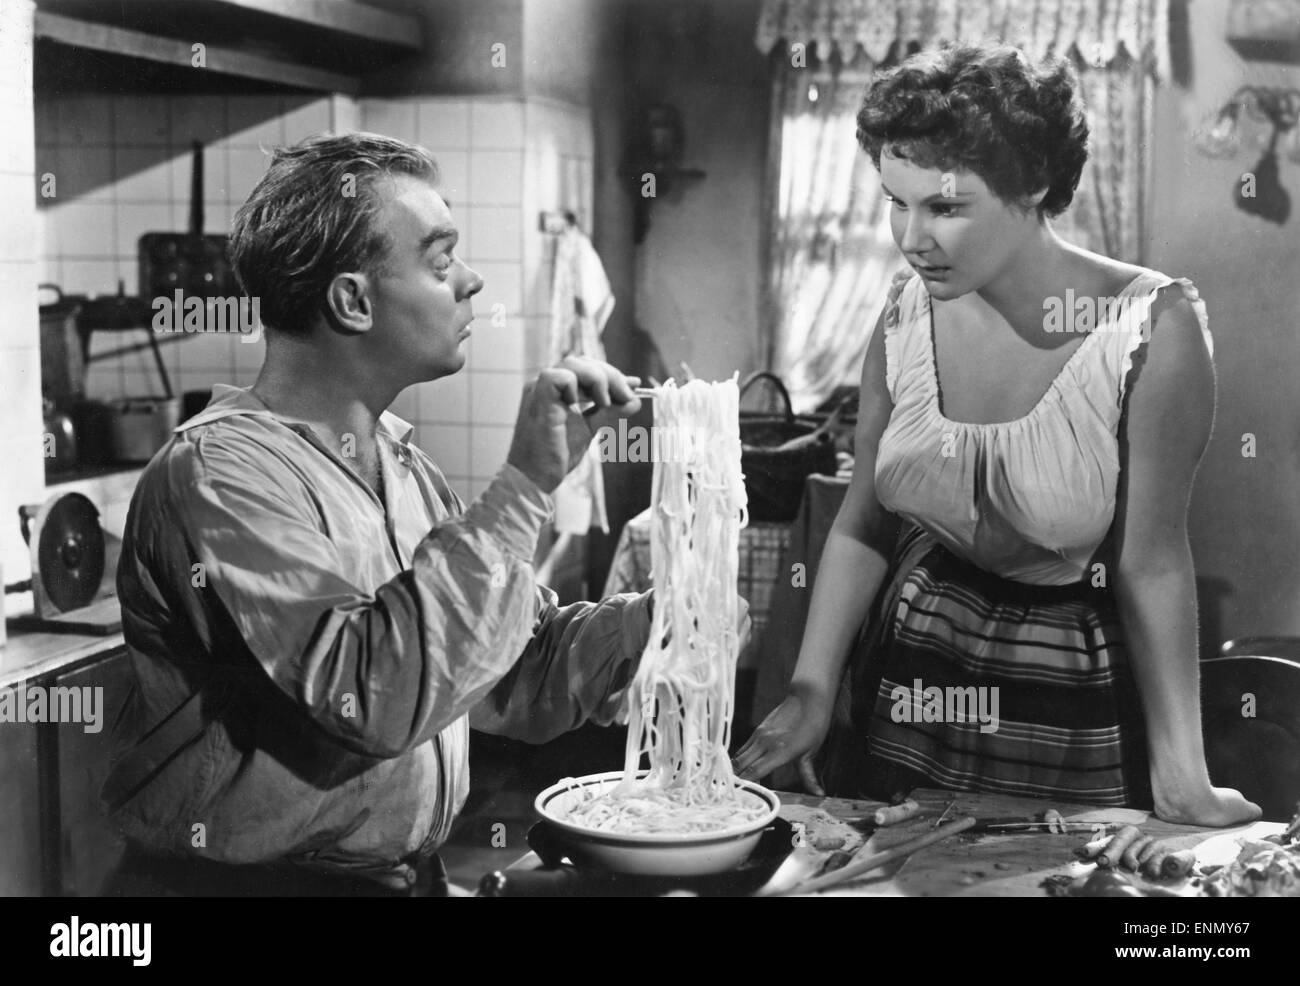 Rote Rosen, rote Lippen, roter Wein, Deutschland 1953, Regie: Paul Martin, Darsteller: Hans Richter, Jeannette Schulze Stock Photo